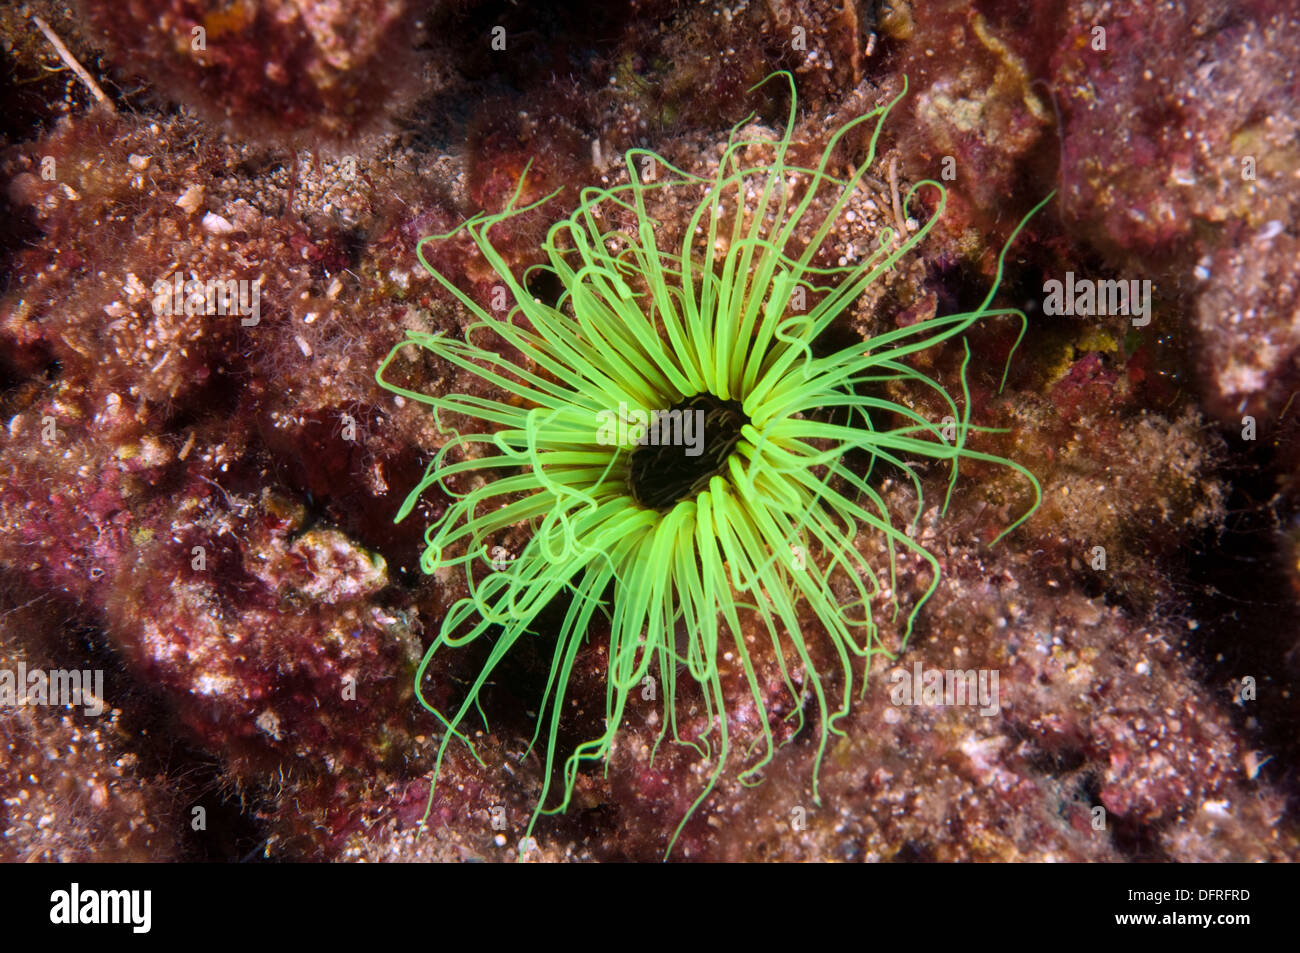 Cylinder anemone, Cerianthus membranacea, Sarıgerme Fethiye Turkey Stock Photo